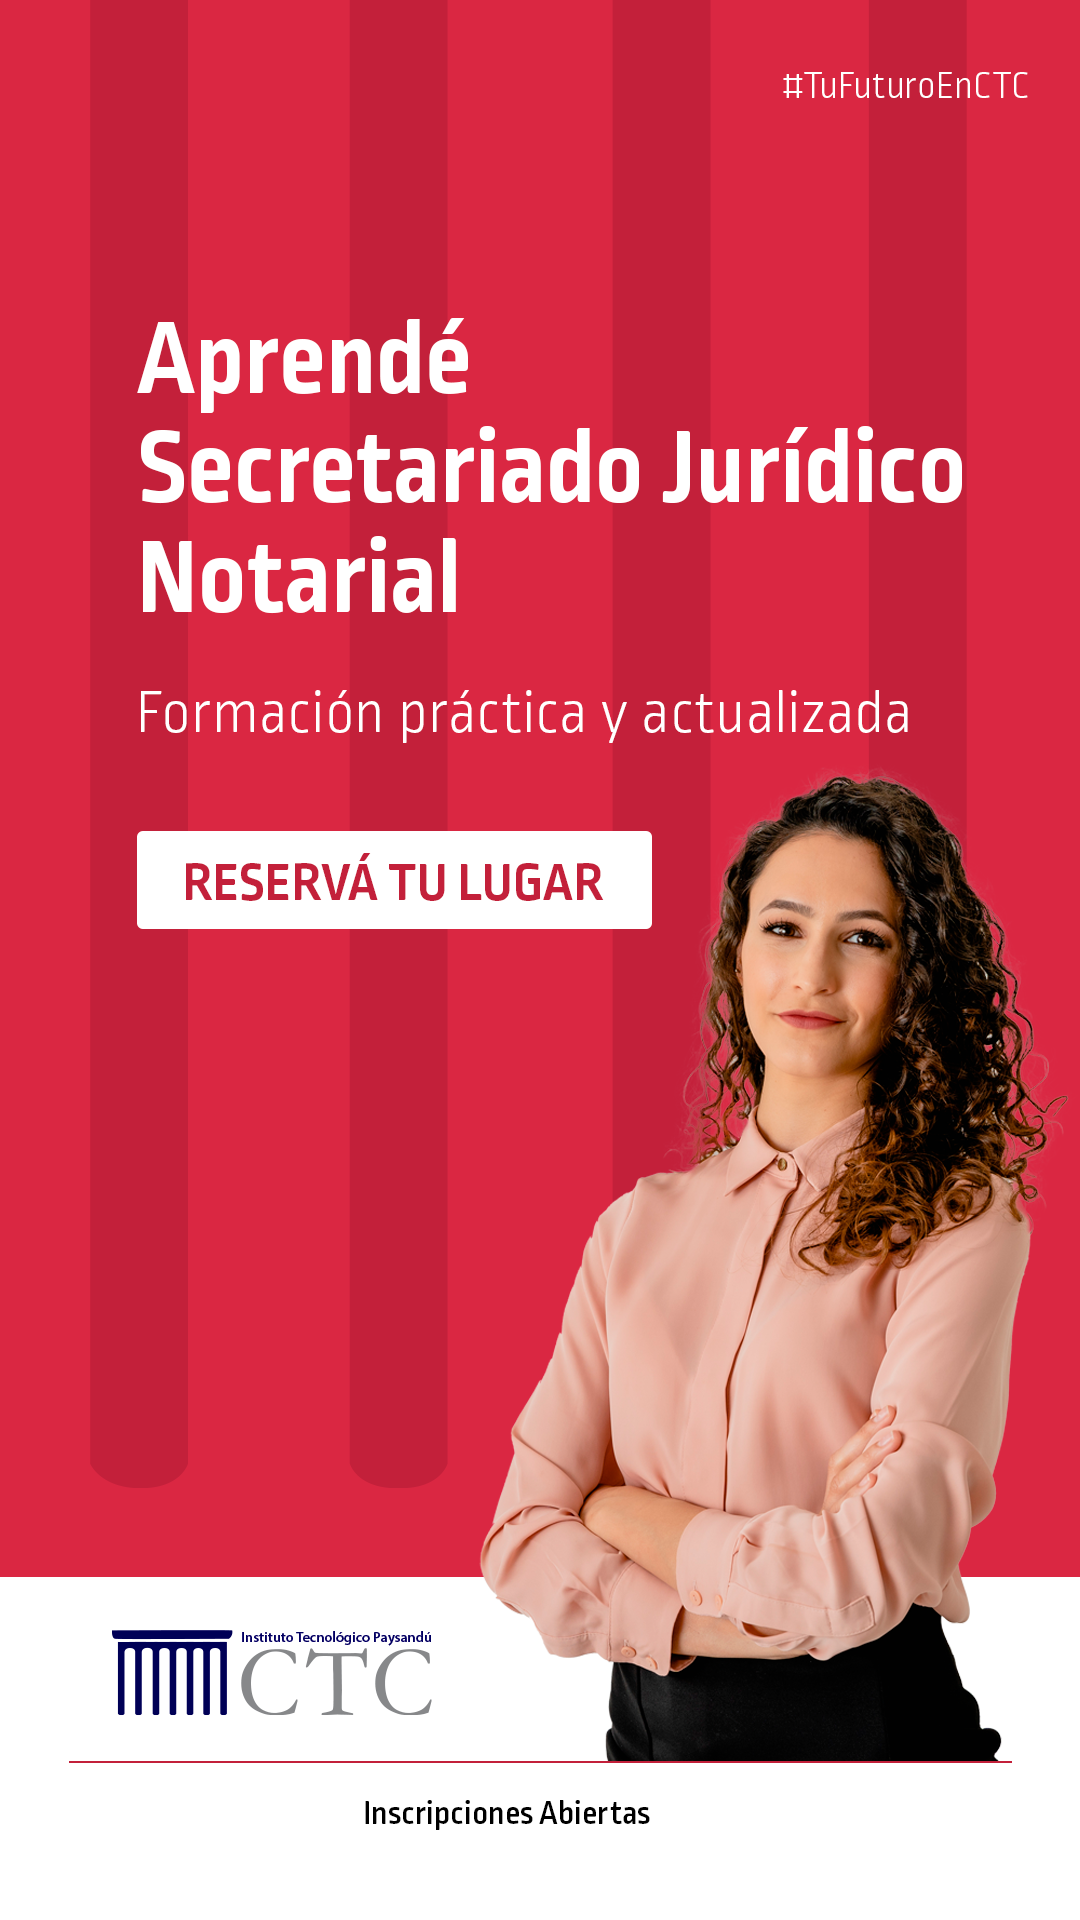 Secretariado-Jurídico-CTC-H